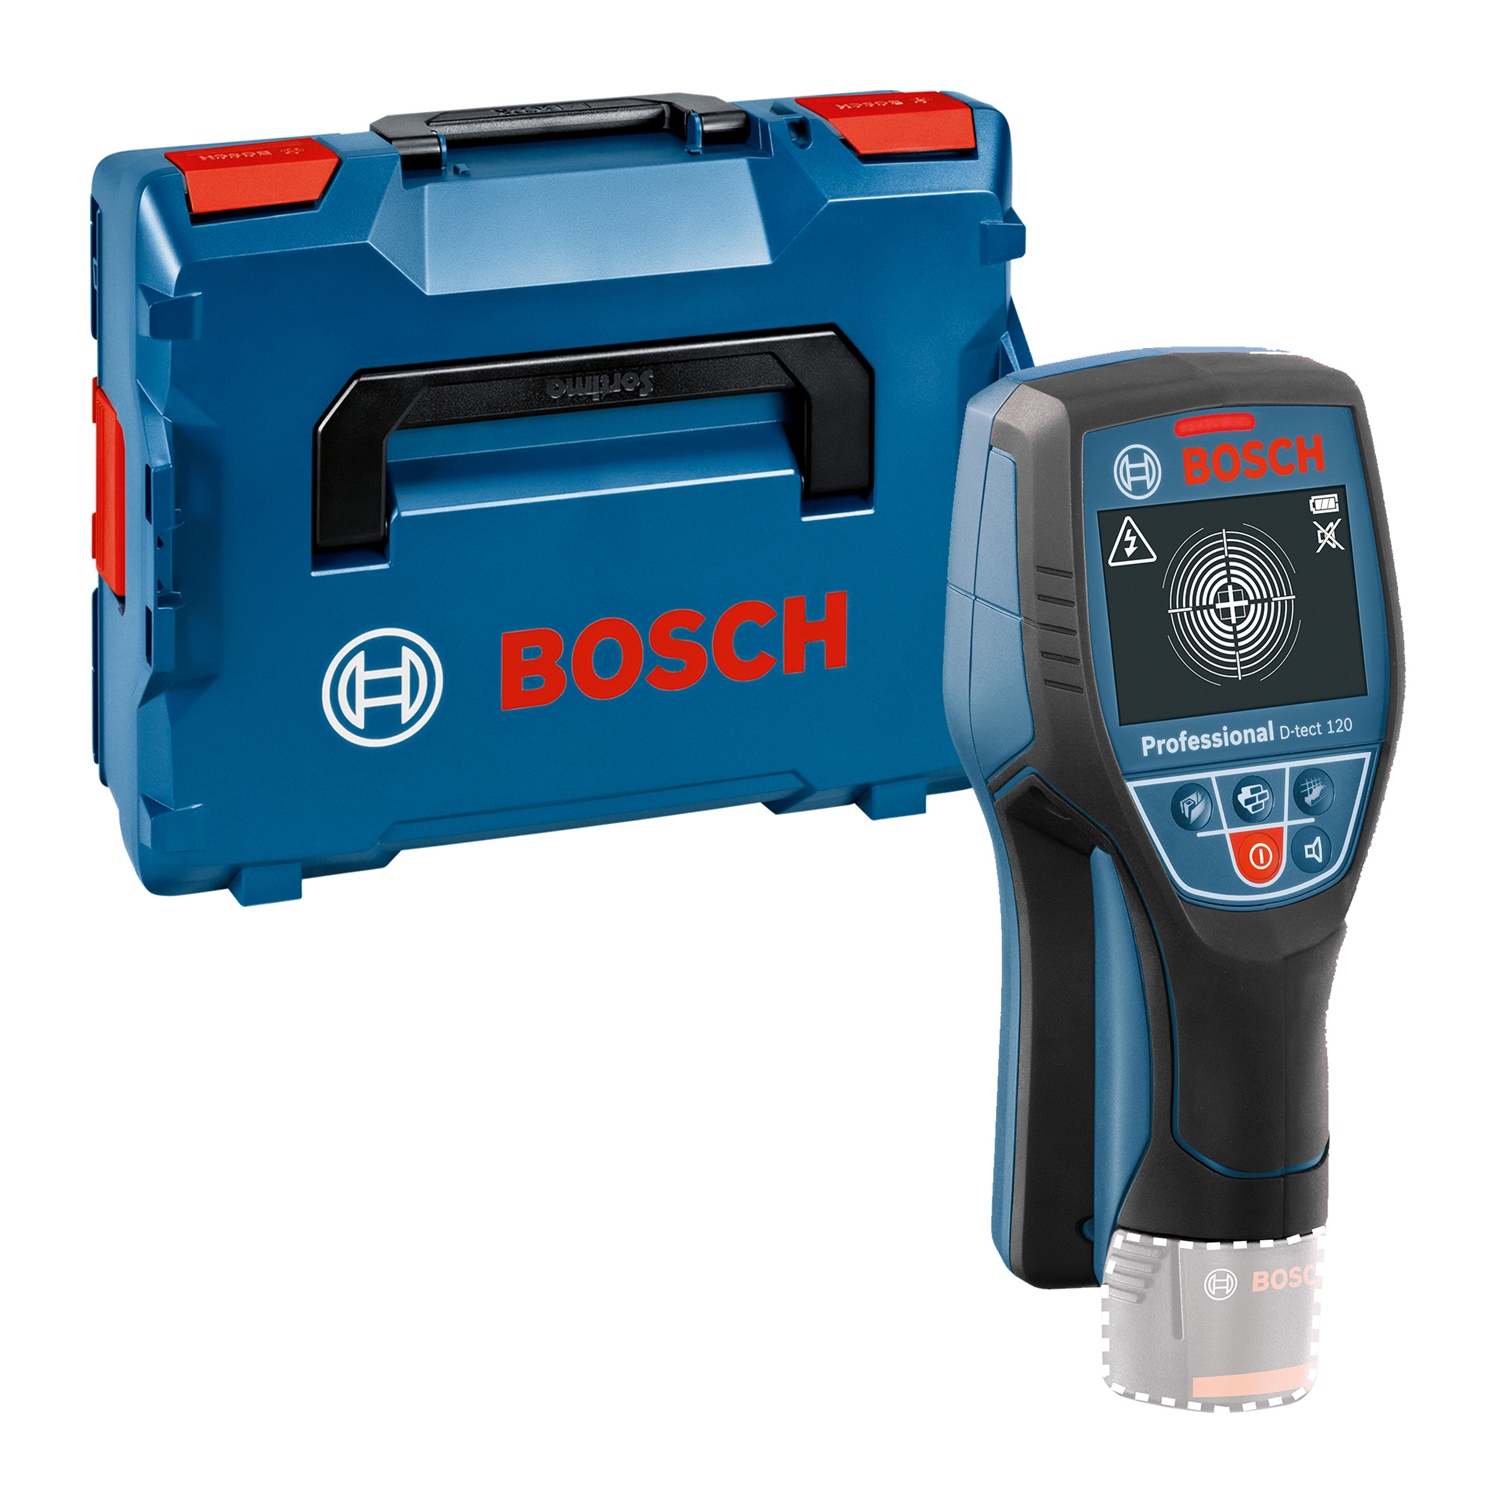 Bosch D-tect 120 Detector digital pentru pereti cu card de pornire rapida, fara acumulatori in setul de livrare